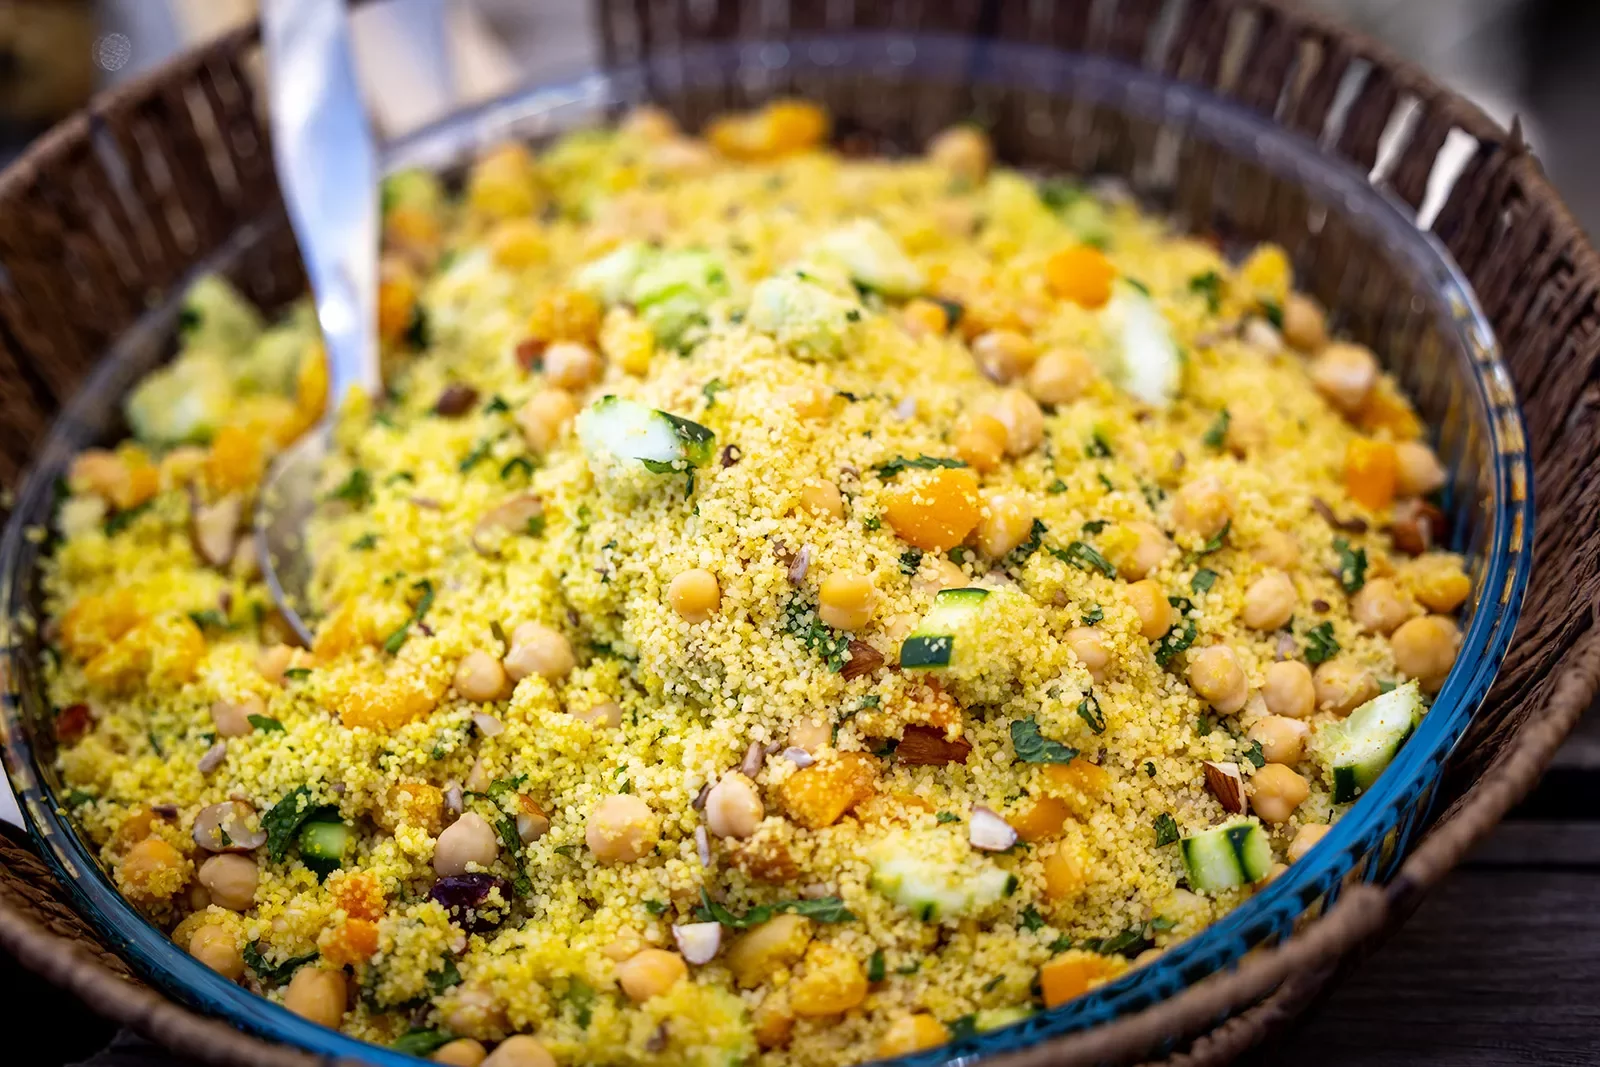 Close-up of couscous salad.